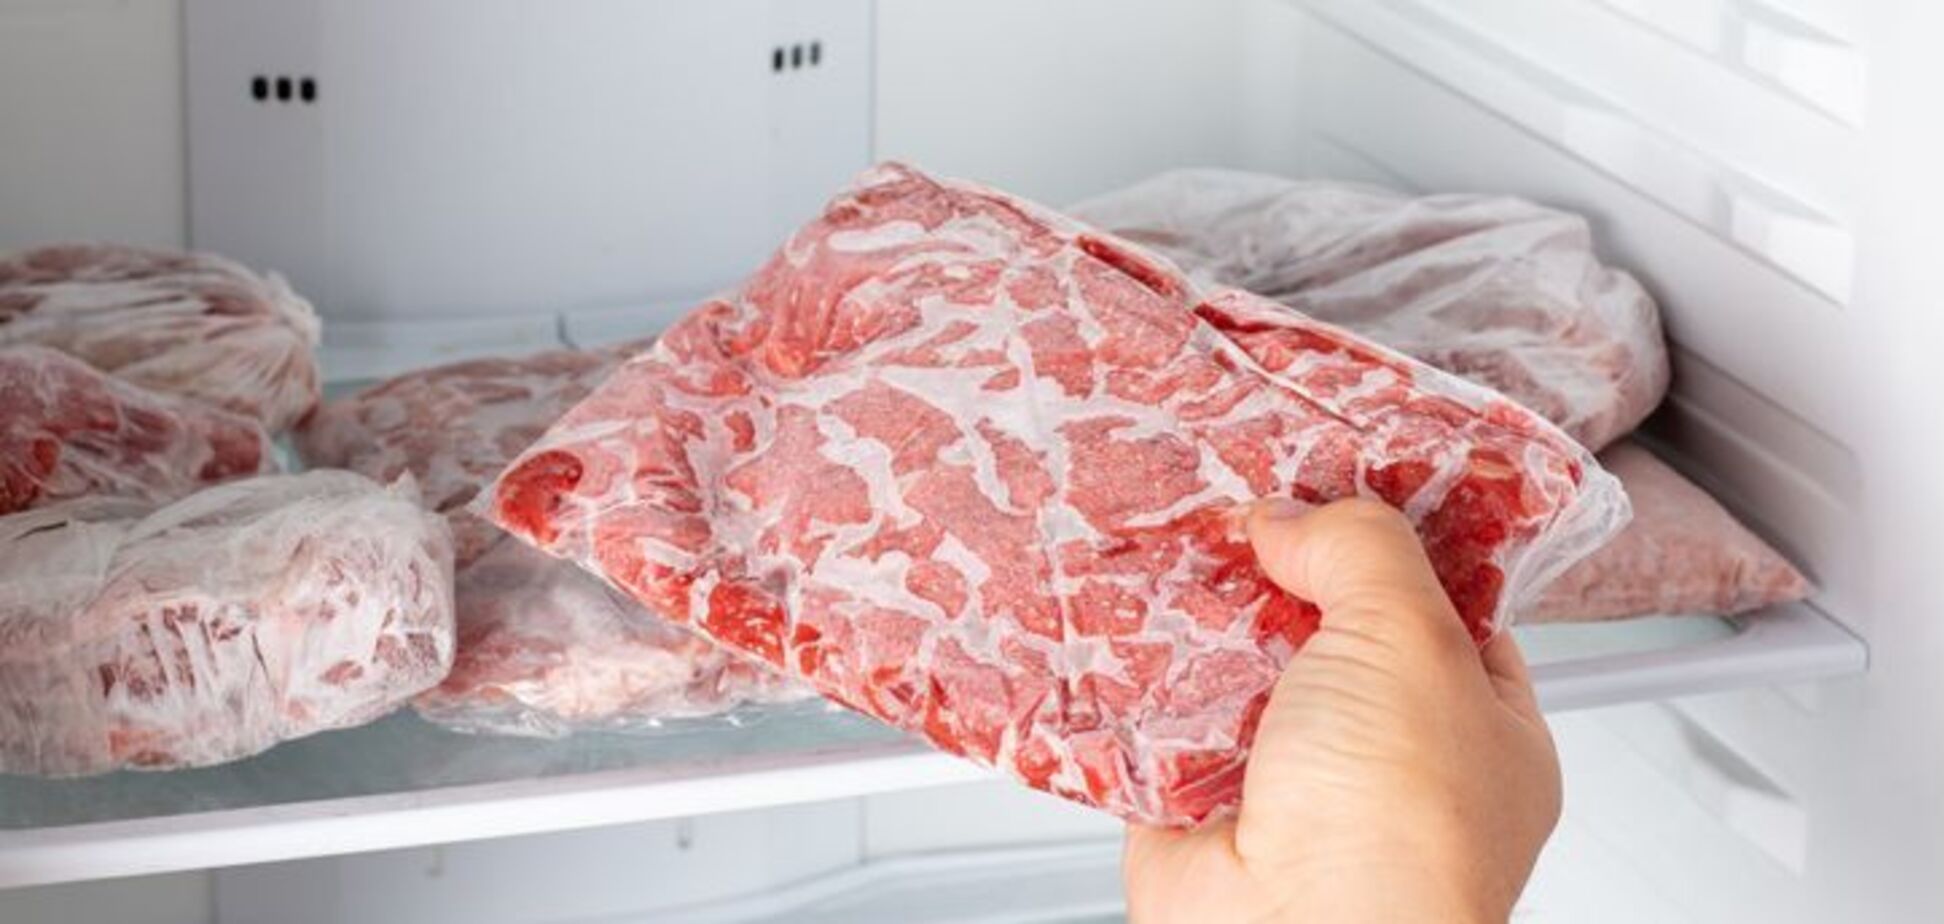 Как разморозить мясо за 10 минут: делимся простым лайфхаком